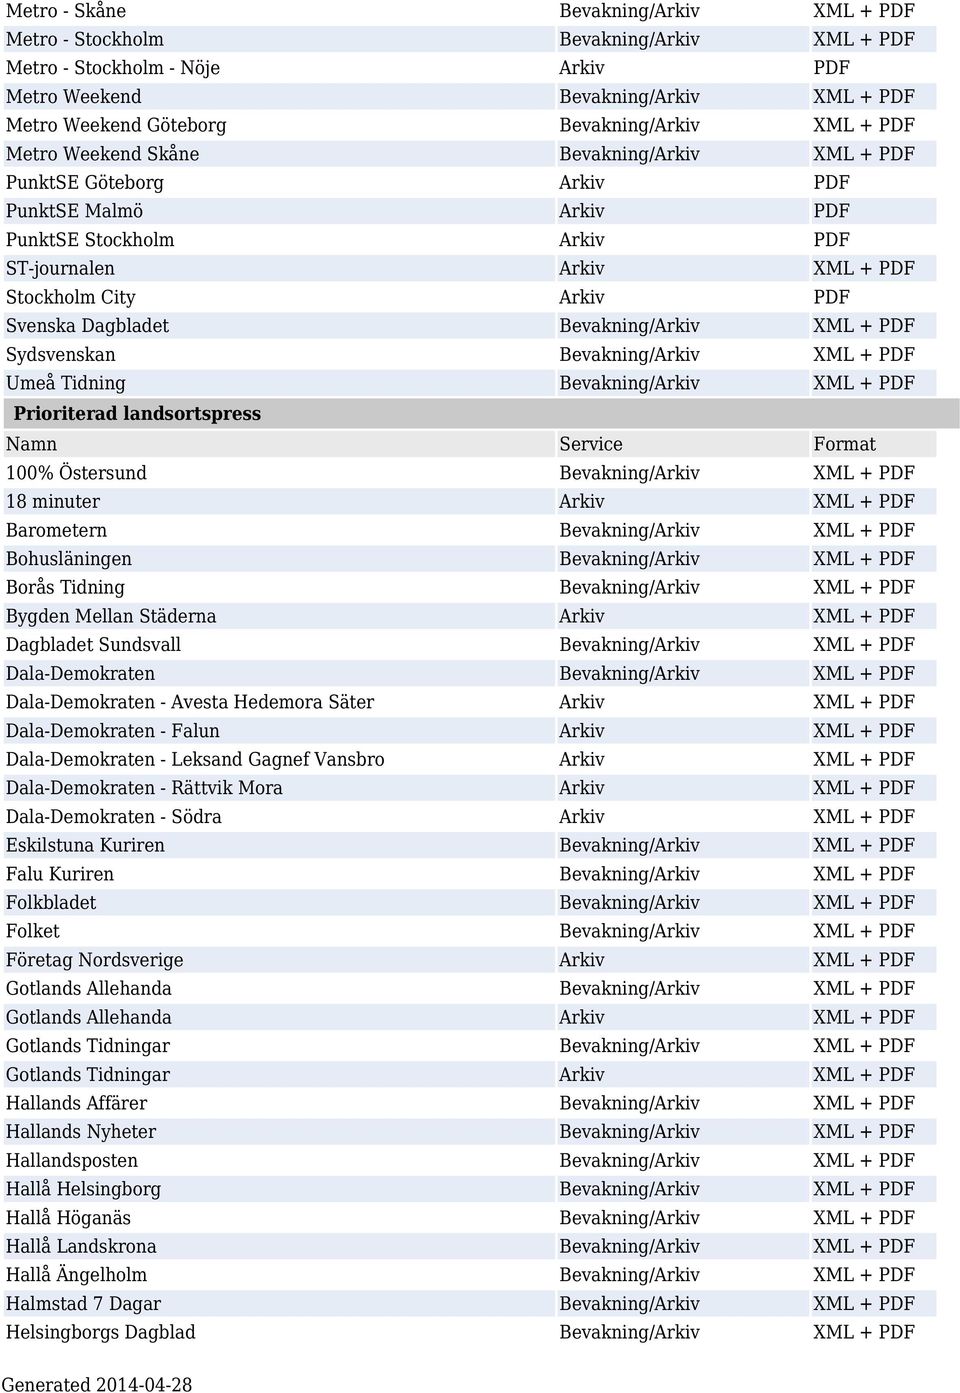 Dagbladet Bevakning/Arkiv XML + PDF Sydsvenskan Bevakning/Arkiv XML + PDF Umeå Tidning Bevakning/Arkiv XML + PDF Prioriterad landsortspress 100% Östersund Bevakning/Arkiv XML + PDF 18 minuter Arkiv